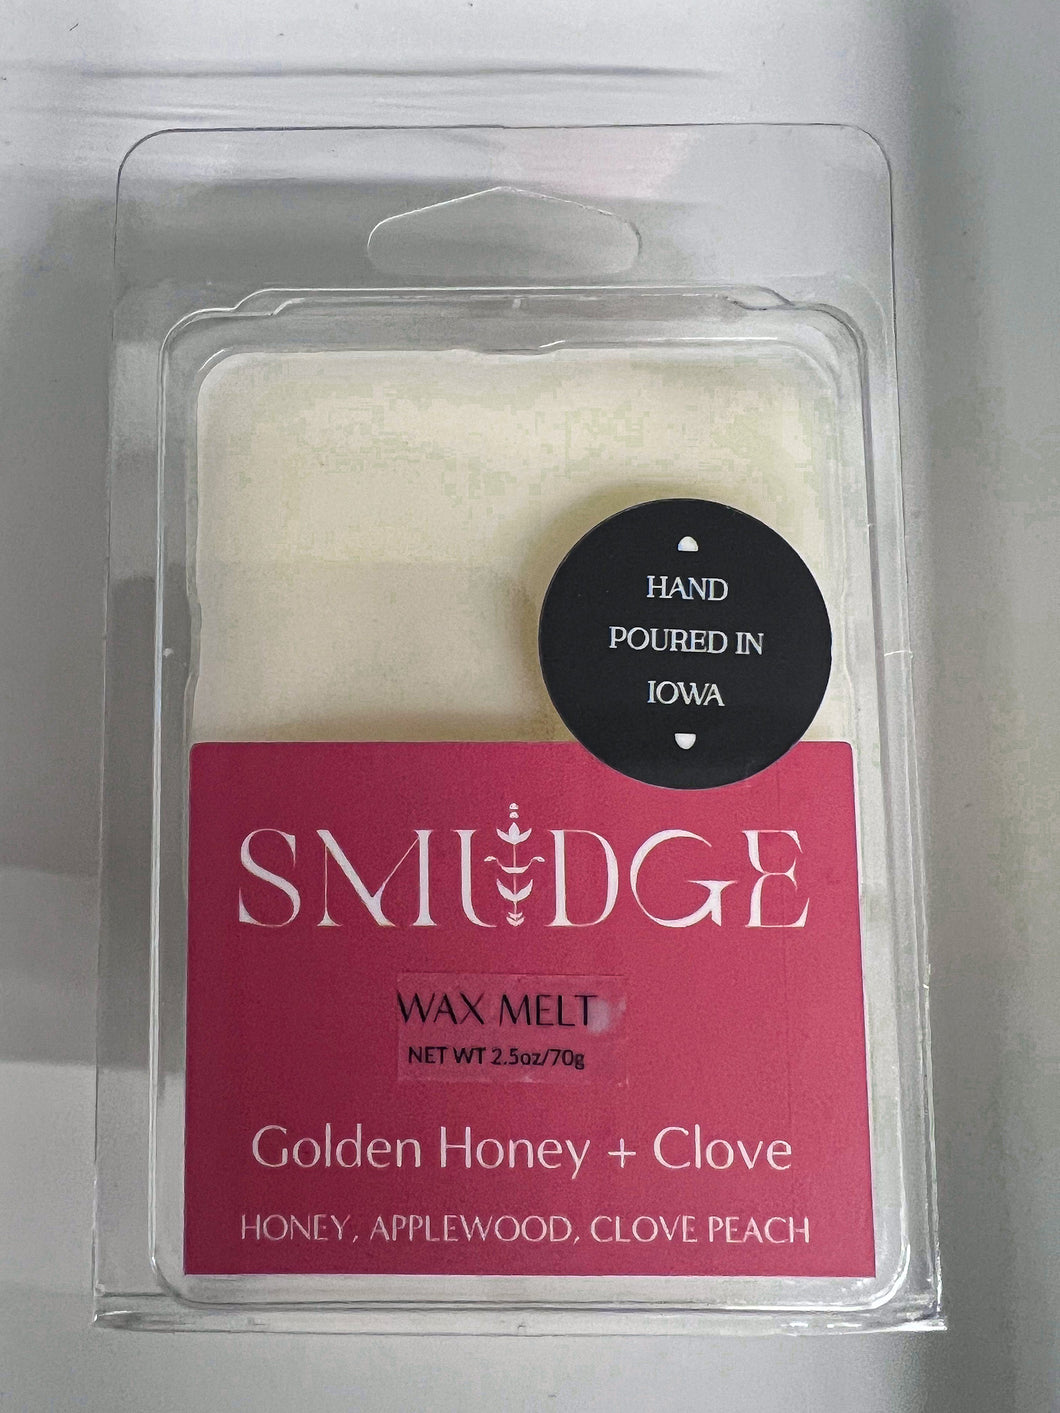 Golden Honey + Clove Wax Melt 2.5oz